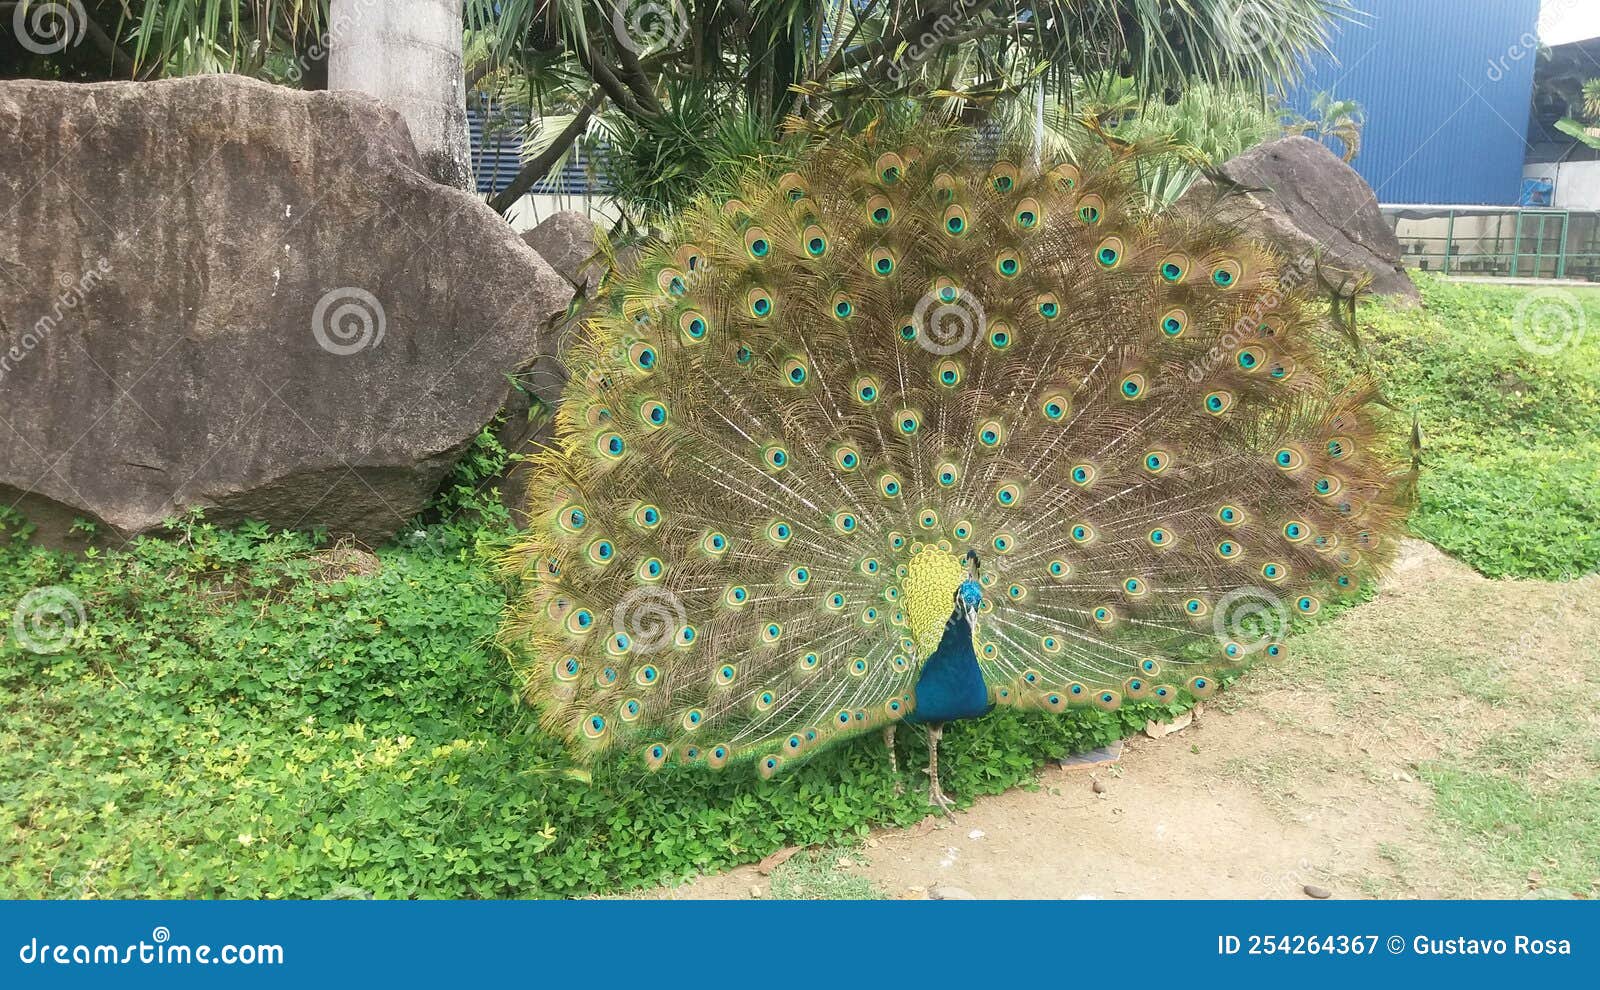 peacock at parque pedra cebola, vitÃÂ³ria